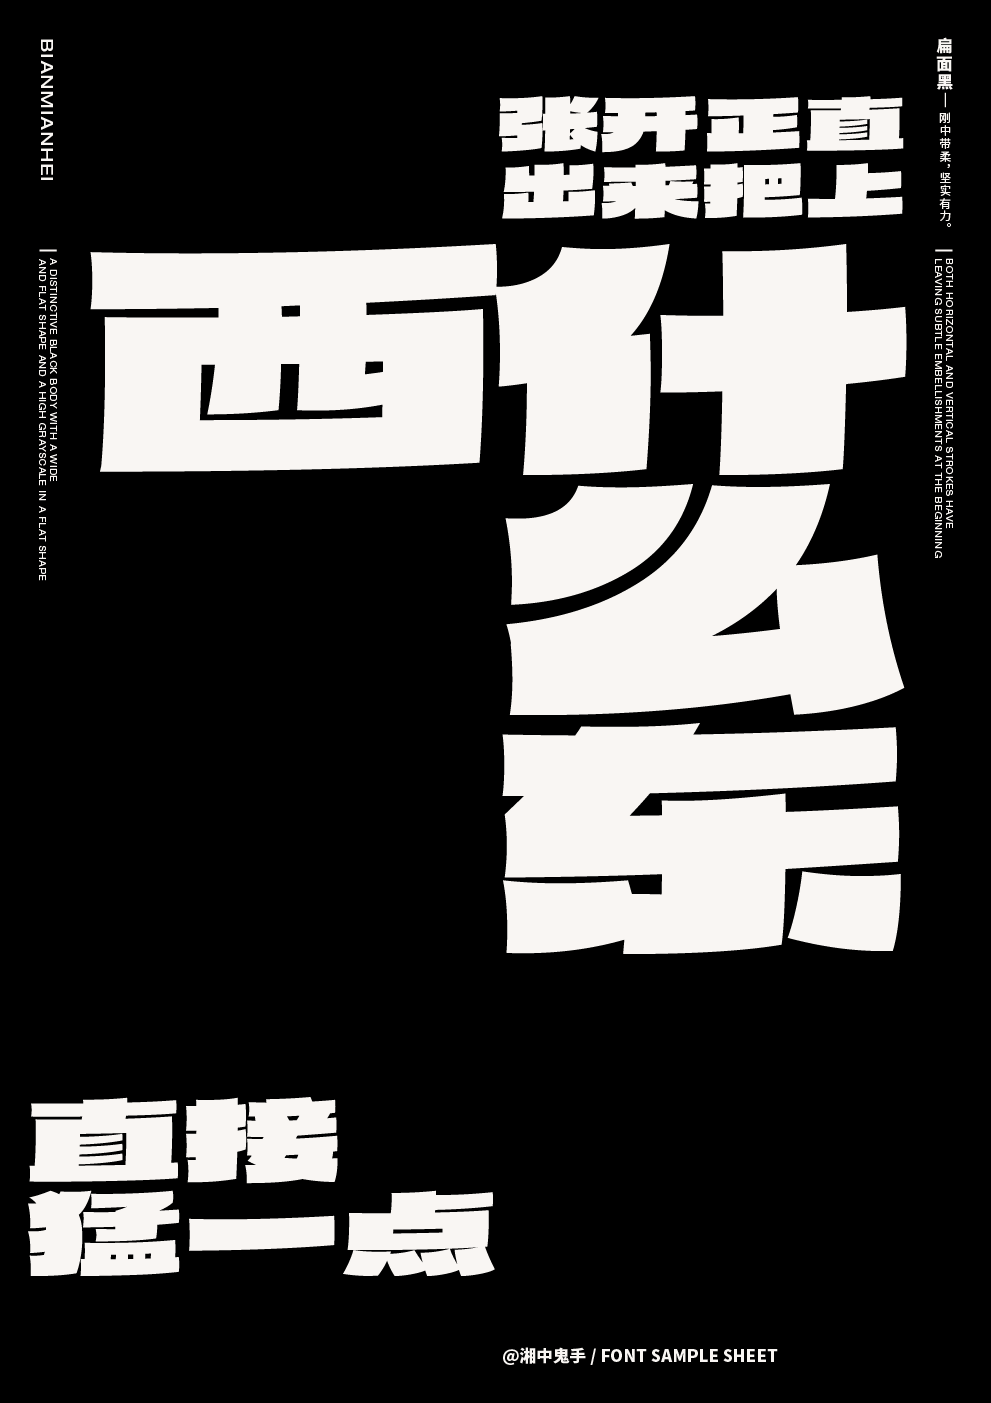 第12届『方正奖』中文专业组金奖：《扁面黑》